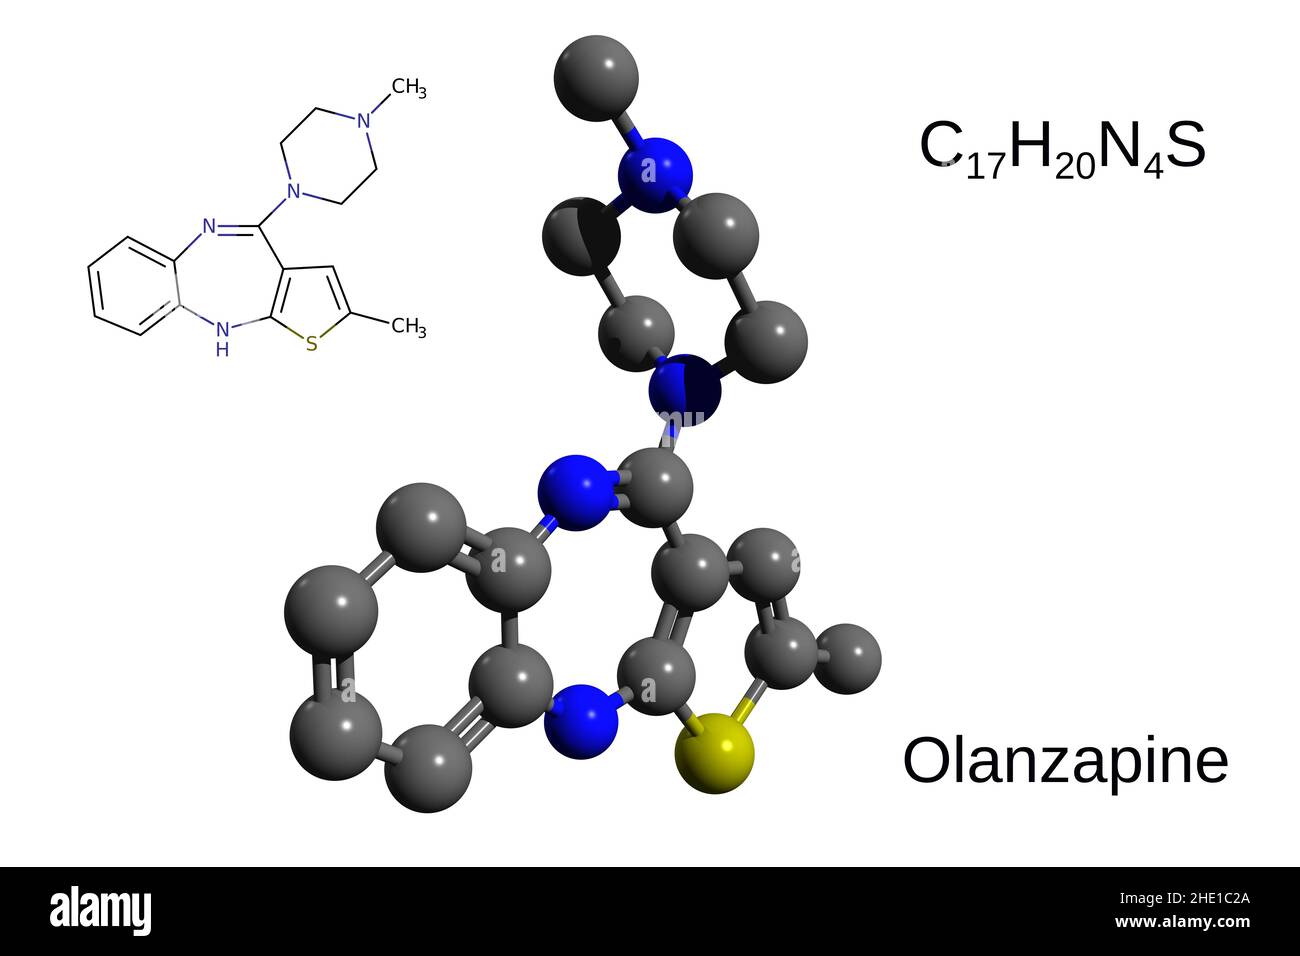 Chemische Formel, Strukturformel und 3D Ball-and-Stick-Modell von atypischen antipsychotischen Olanzapin, weißer Hintergrund Stockfoto